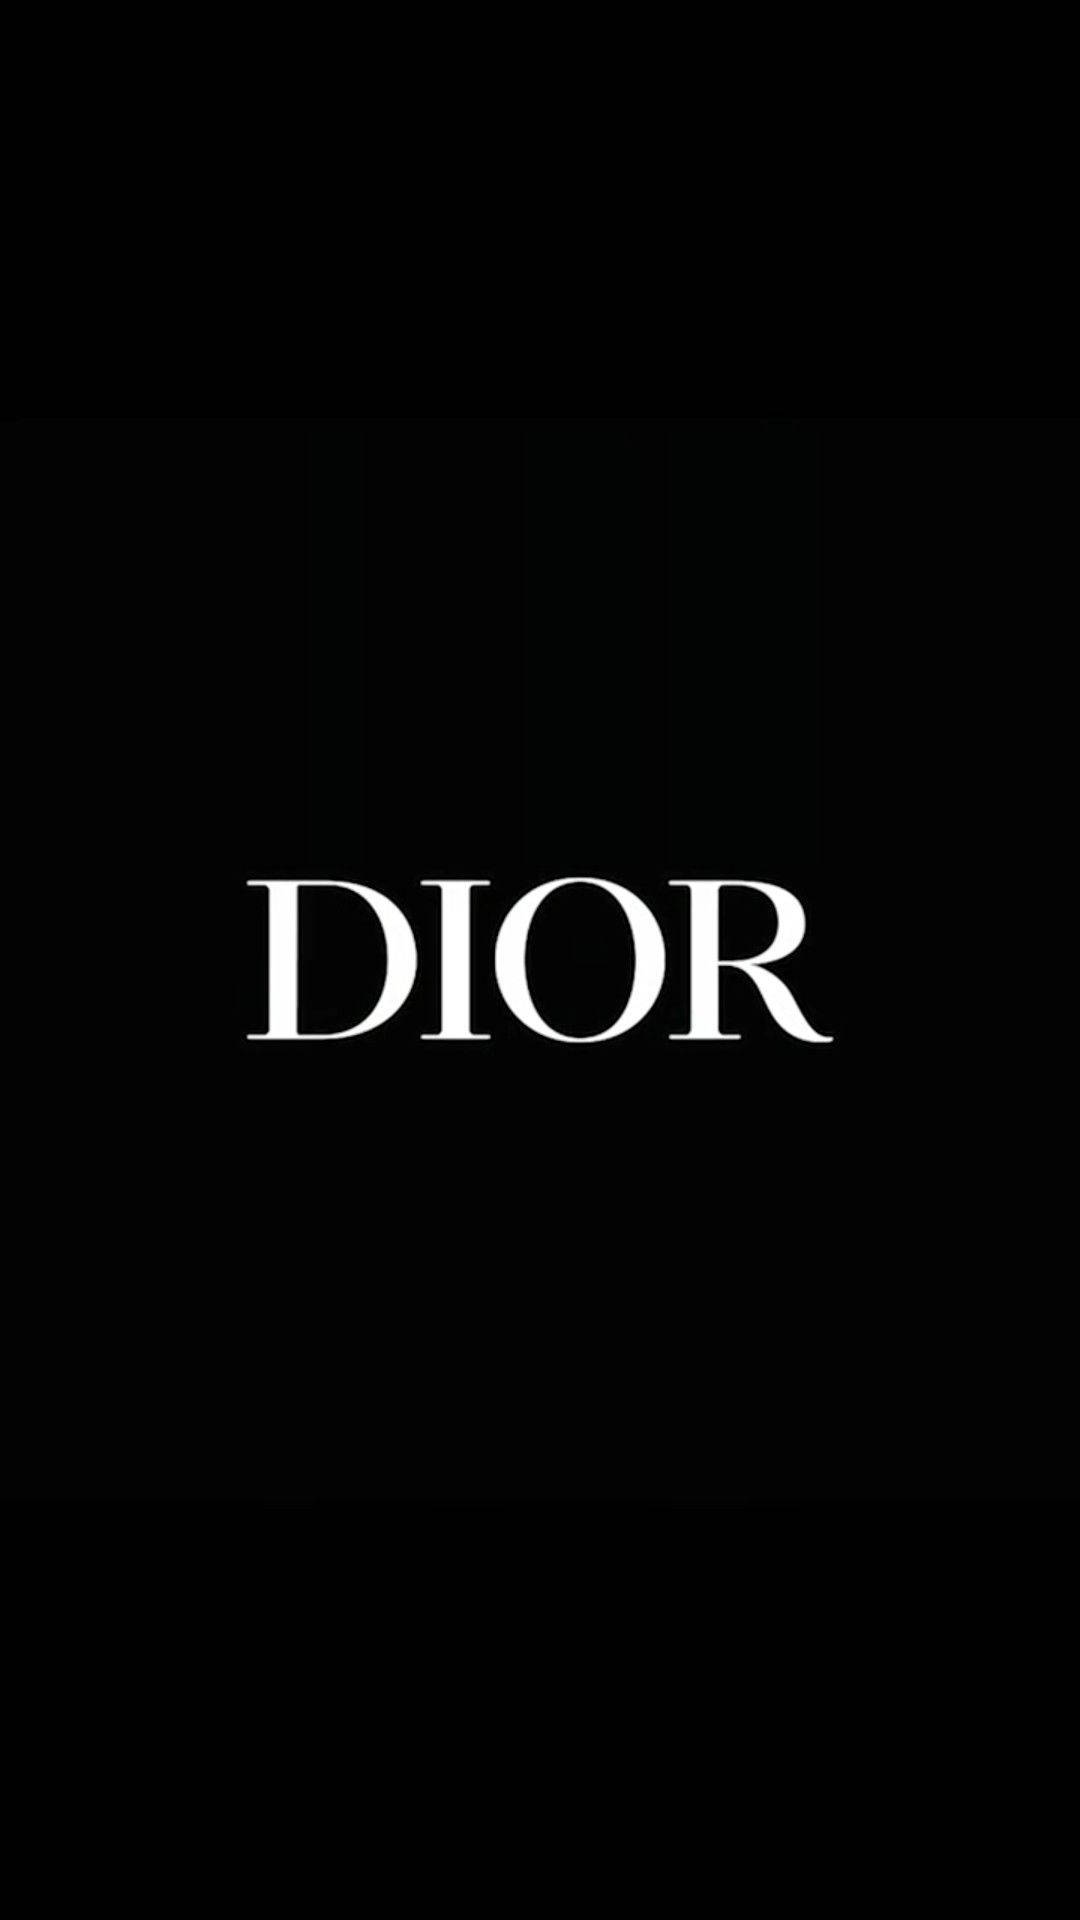 Download Simple Dior Phone Wallpaper